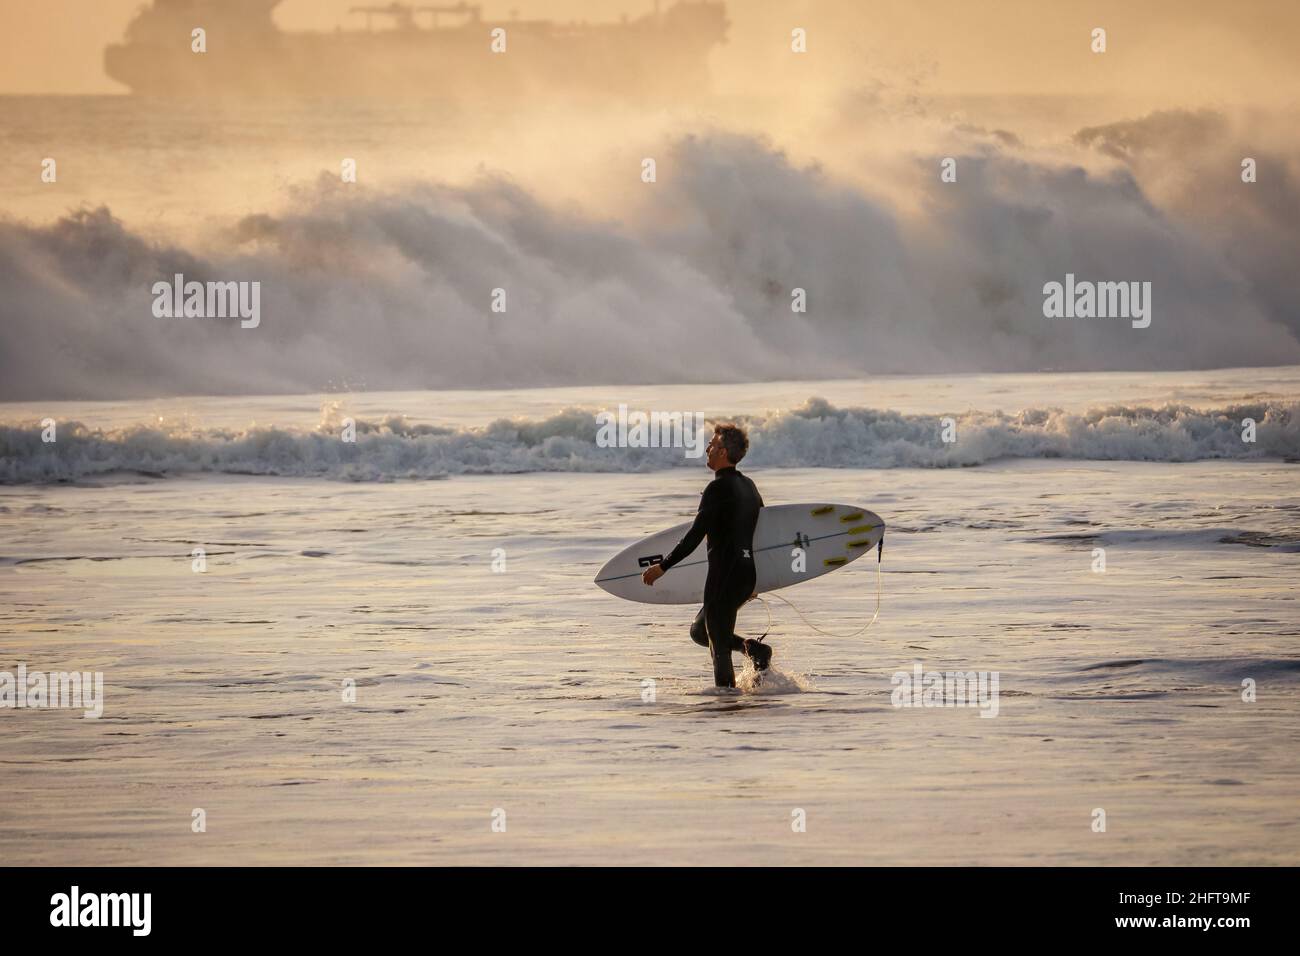 Surfer mit Surfbrett zum Surfen am Strand Stockfoto